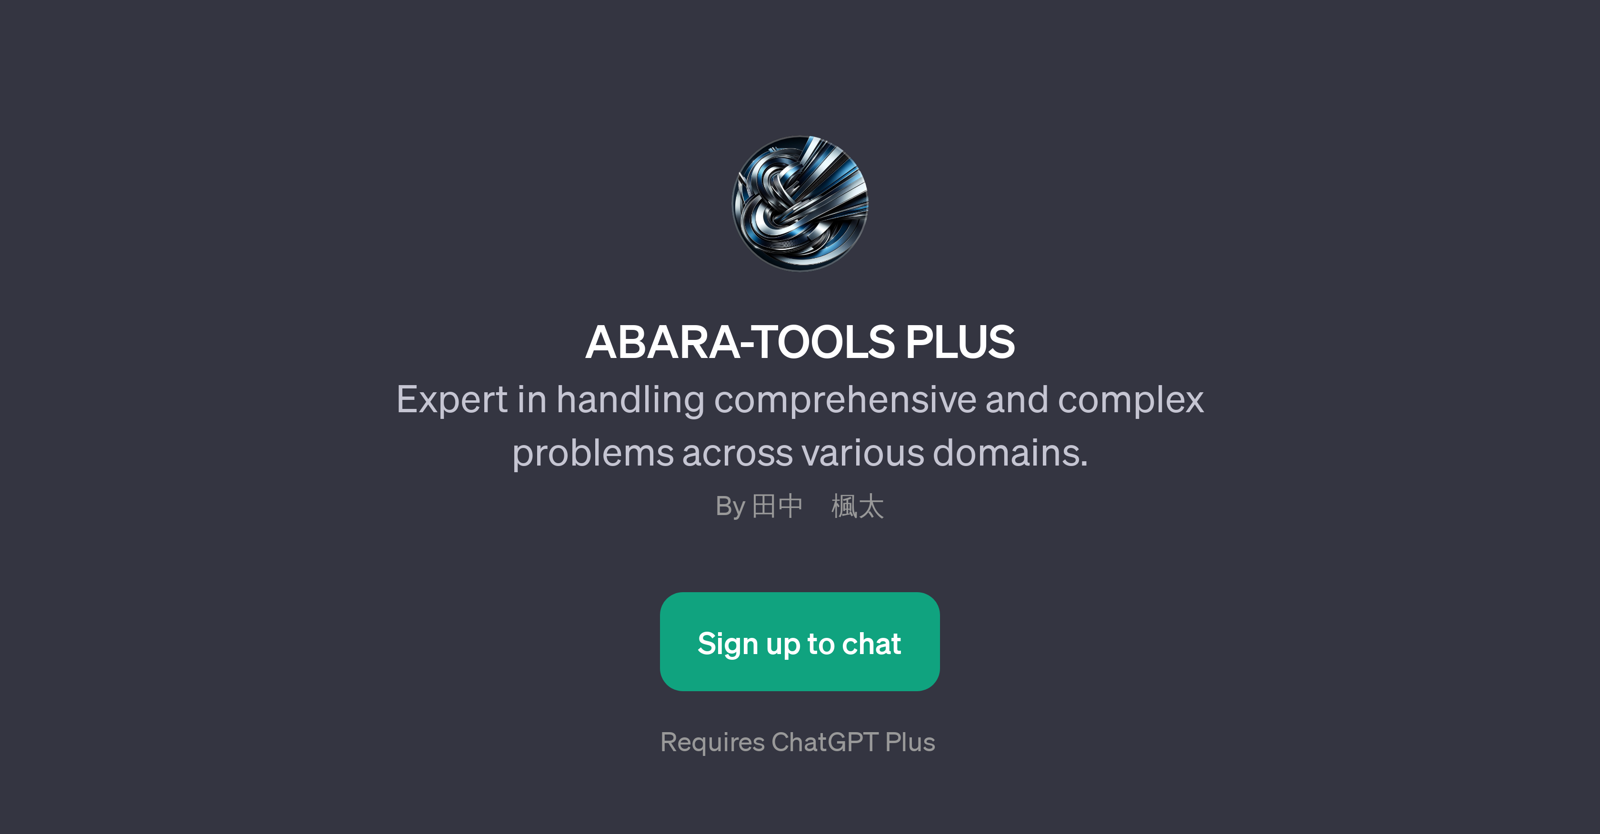 ABARA-TOOLS PLUS website